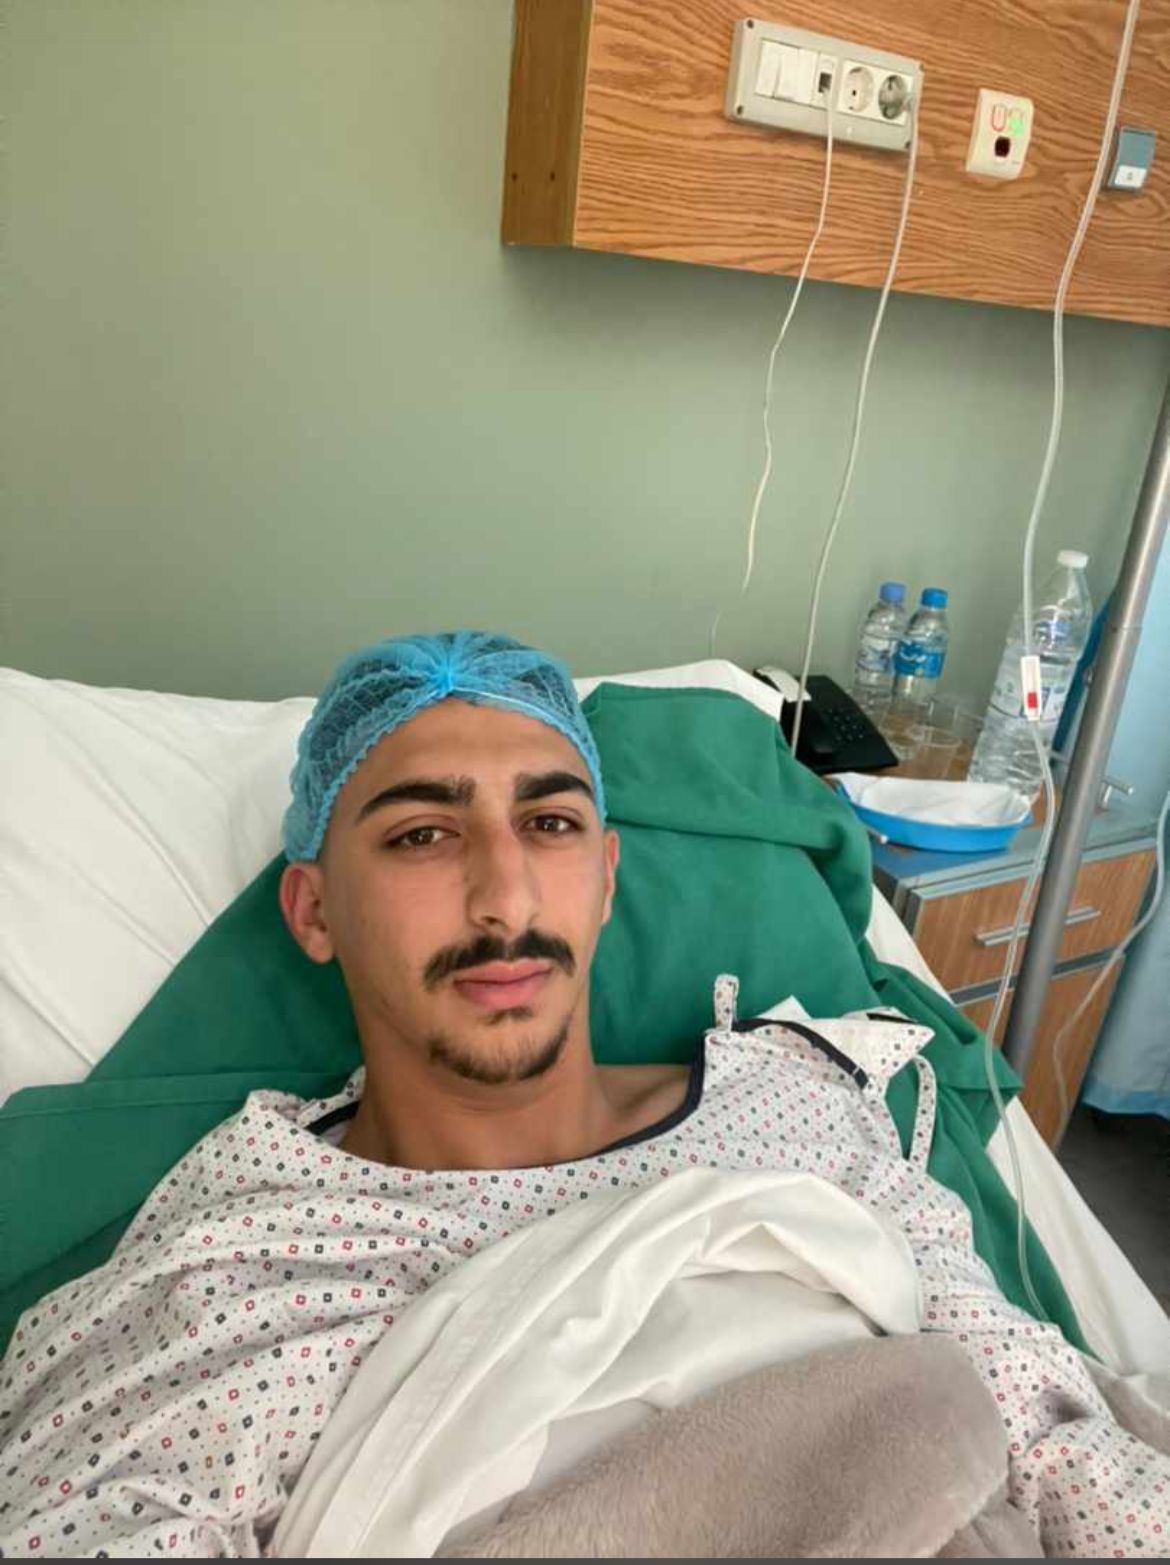 خضع لاعب نادي النجمة معركة الرياضي احمد طراد لعملية جراحية صباح اليوم في مستشفى جبل عامل - صور  تح